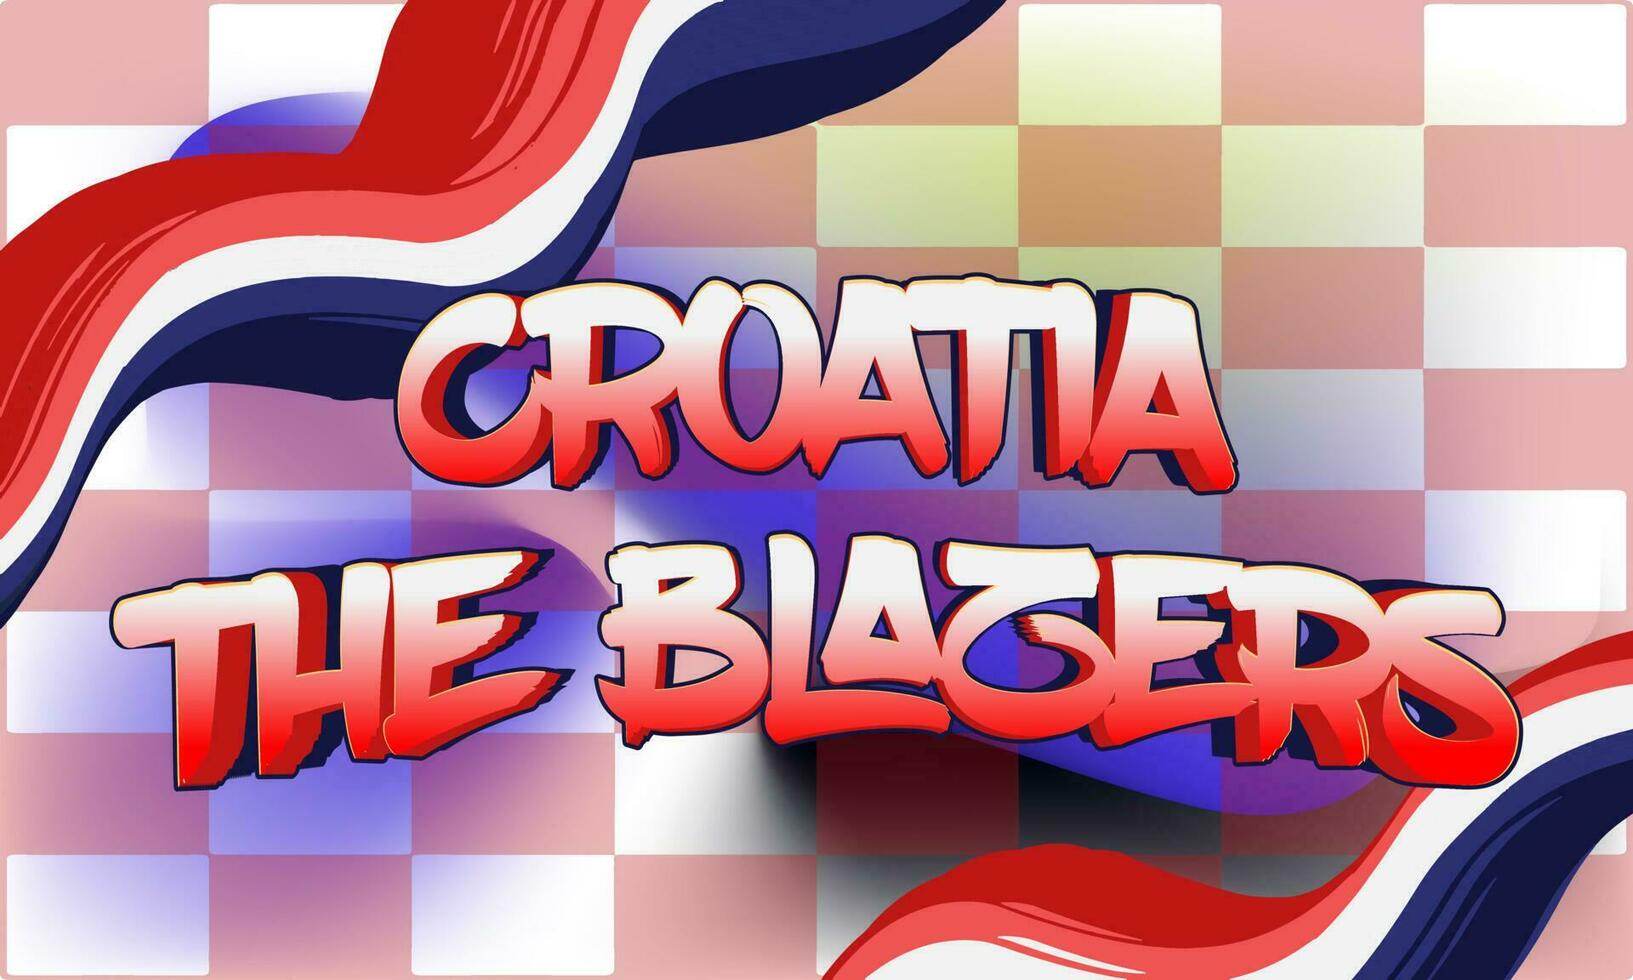 kroatien die blazer weltfußballmeisterschaft hintergrundthema vektor